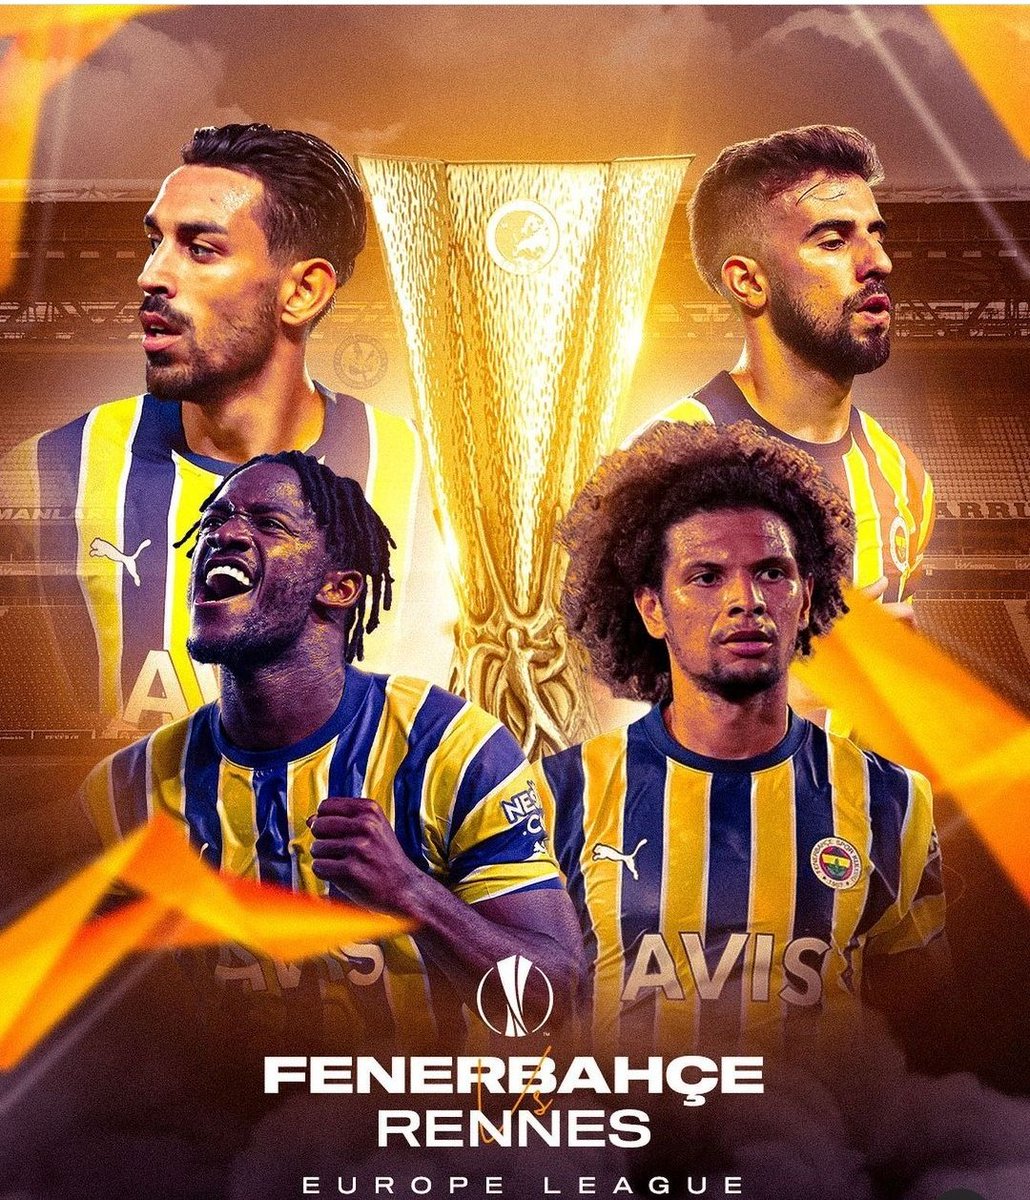 UEFA Avrupa Ligi'nde haftanın maçı ilan edilen Fenerbahçe-Rennes maçına Kadıköy Hazır 💪💛💙 #Fenerbahçe #FenerinMaçıVar #FBvREN Ali Koç Jorge Jesus